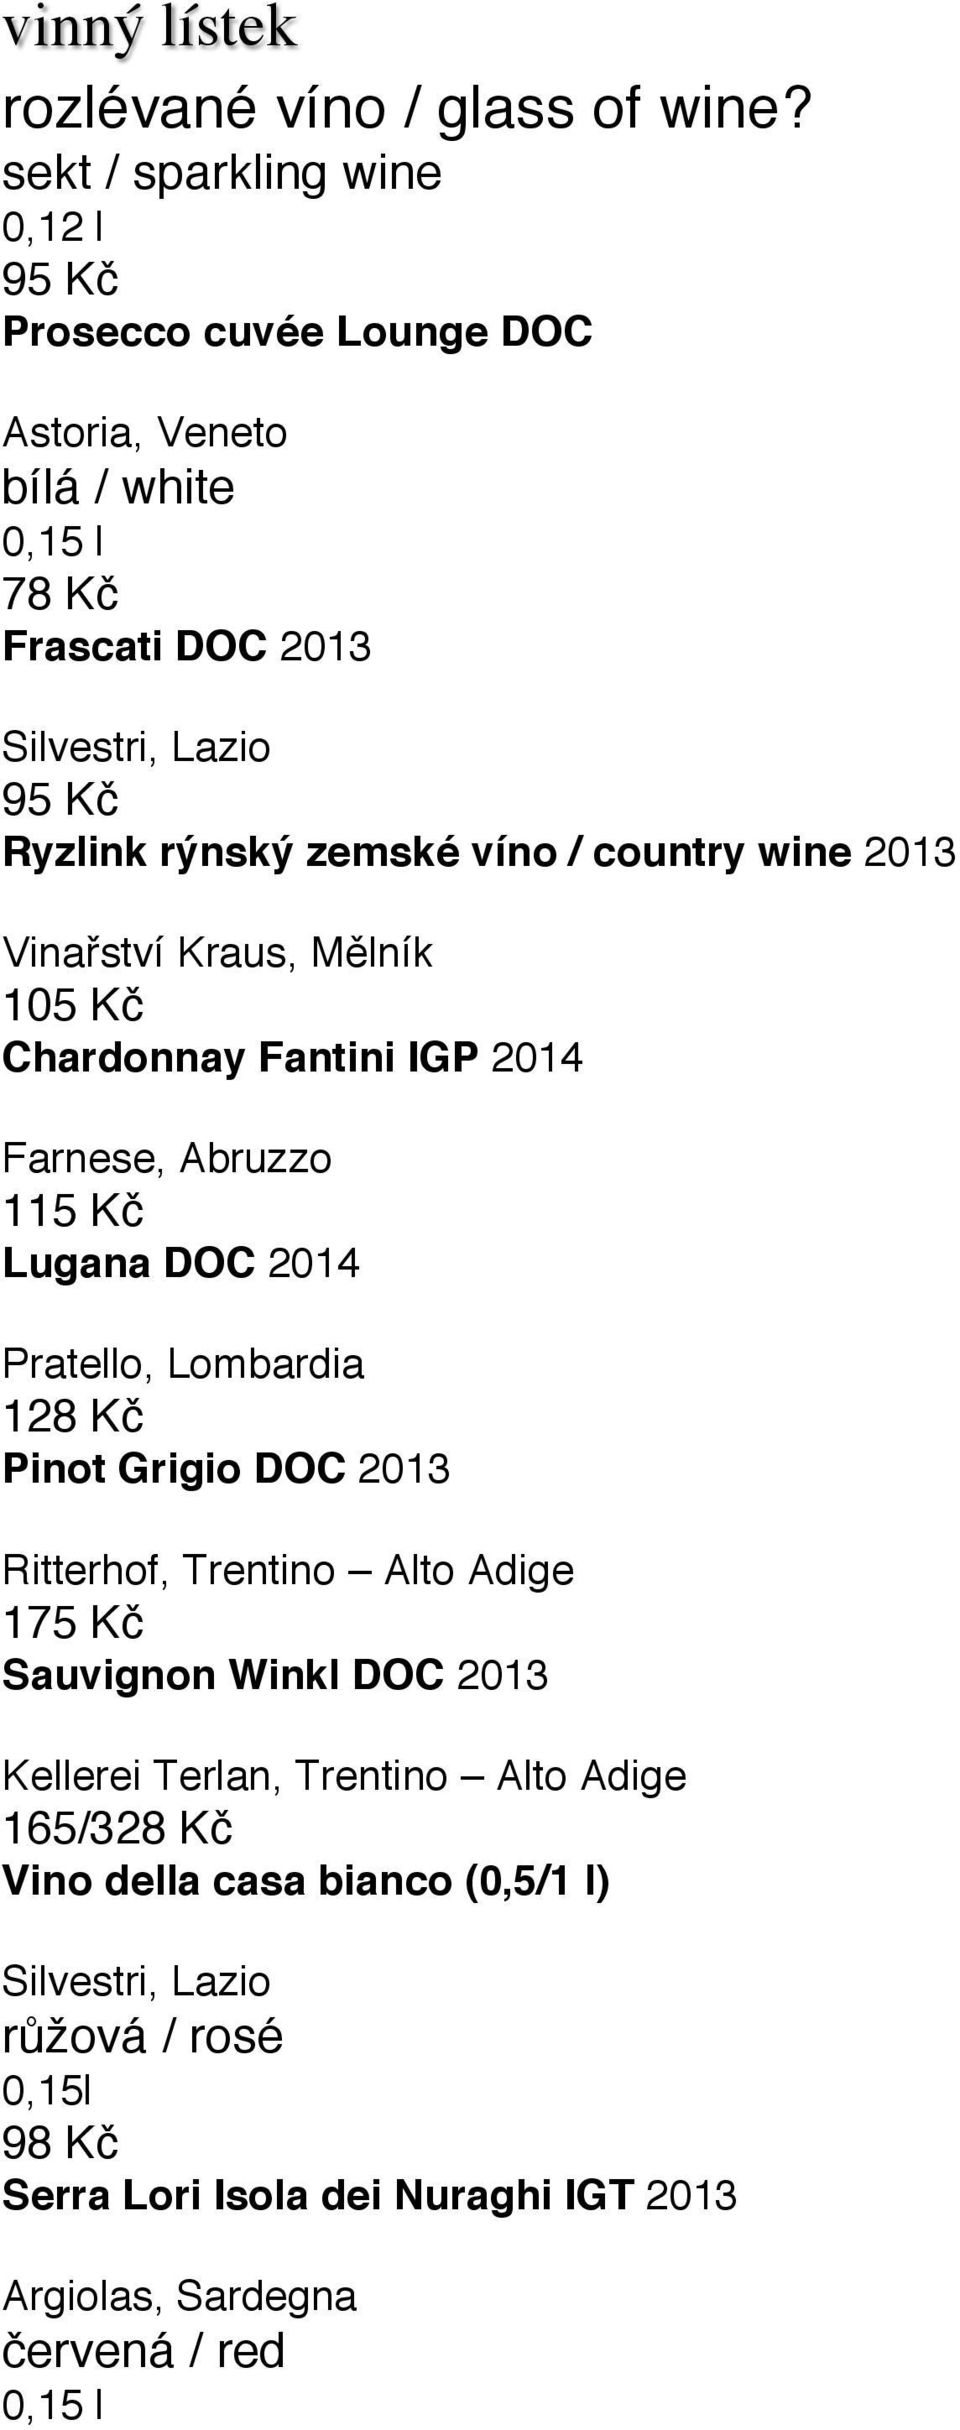 zemské víno / country wine 2013 Vinařství Kraus, Mělník 105 Kč Chardonnay Fantini IGP 2014 Farnese, Abruzzo 115 Kč Lugana DOC 2014 Pratello, Lombardia 128 Kč